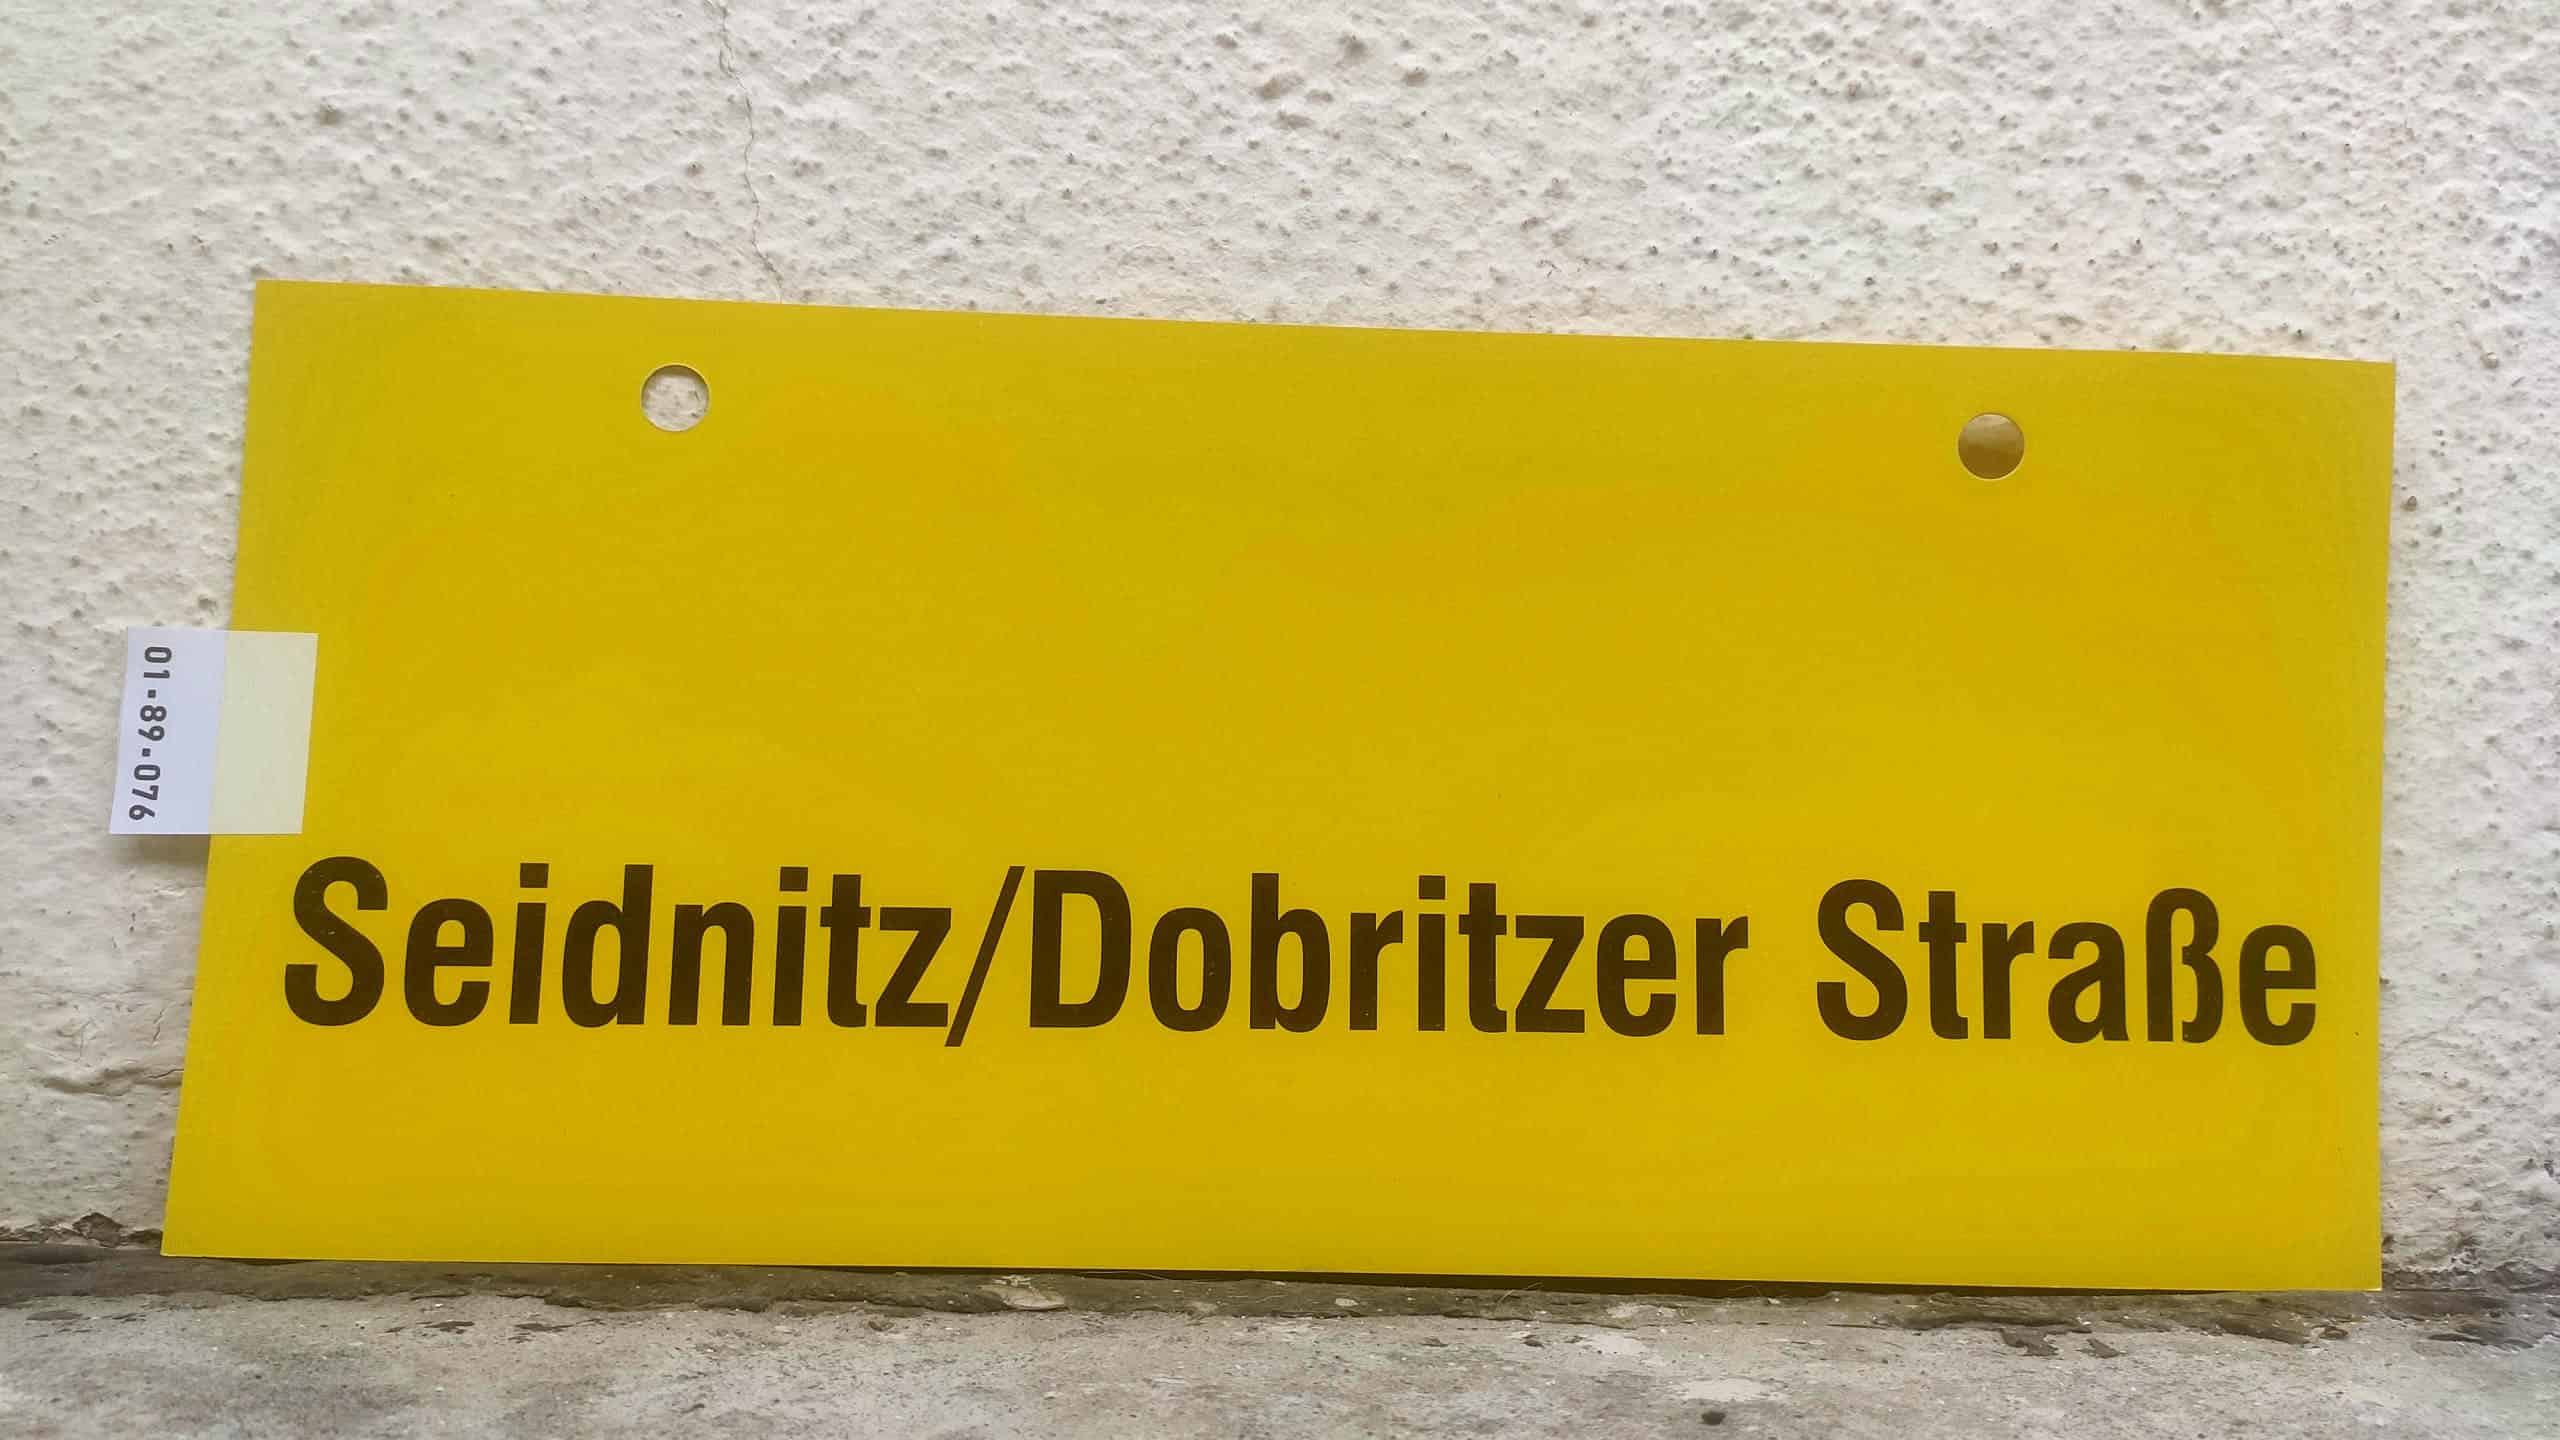 Seidnitz/Dobritzer Straße